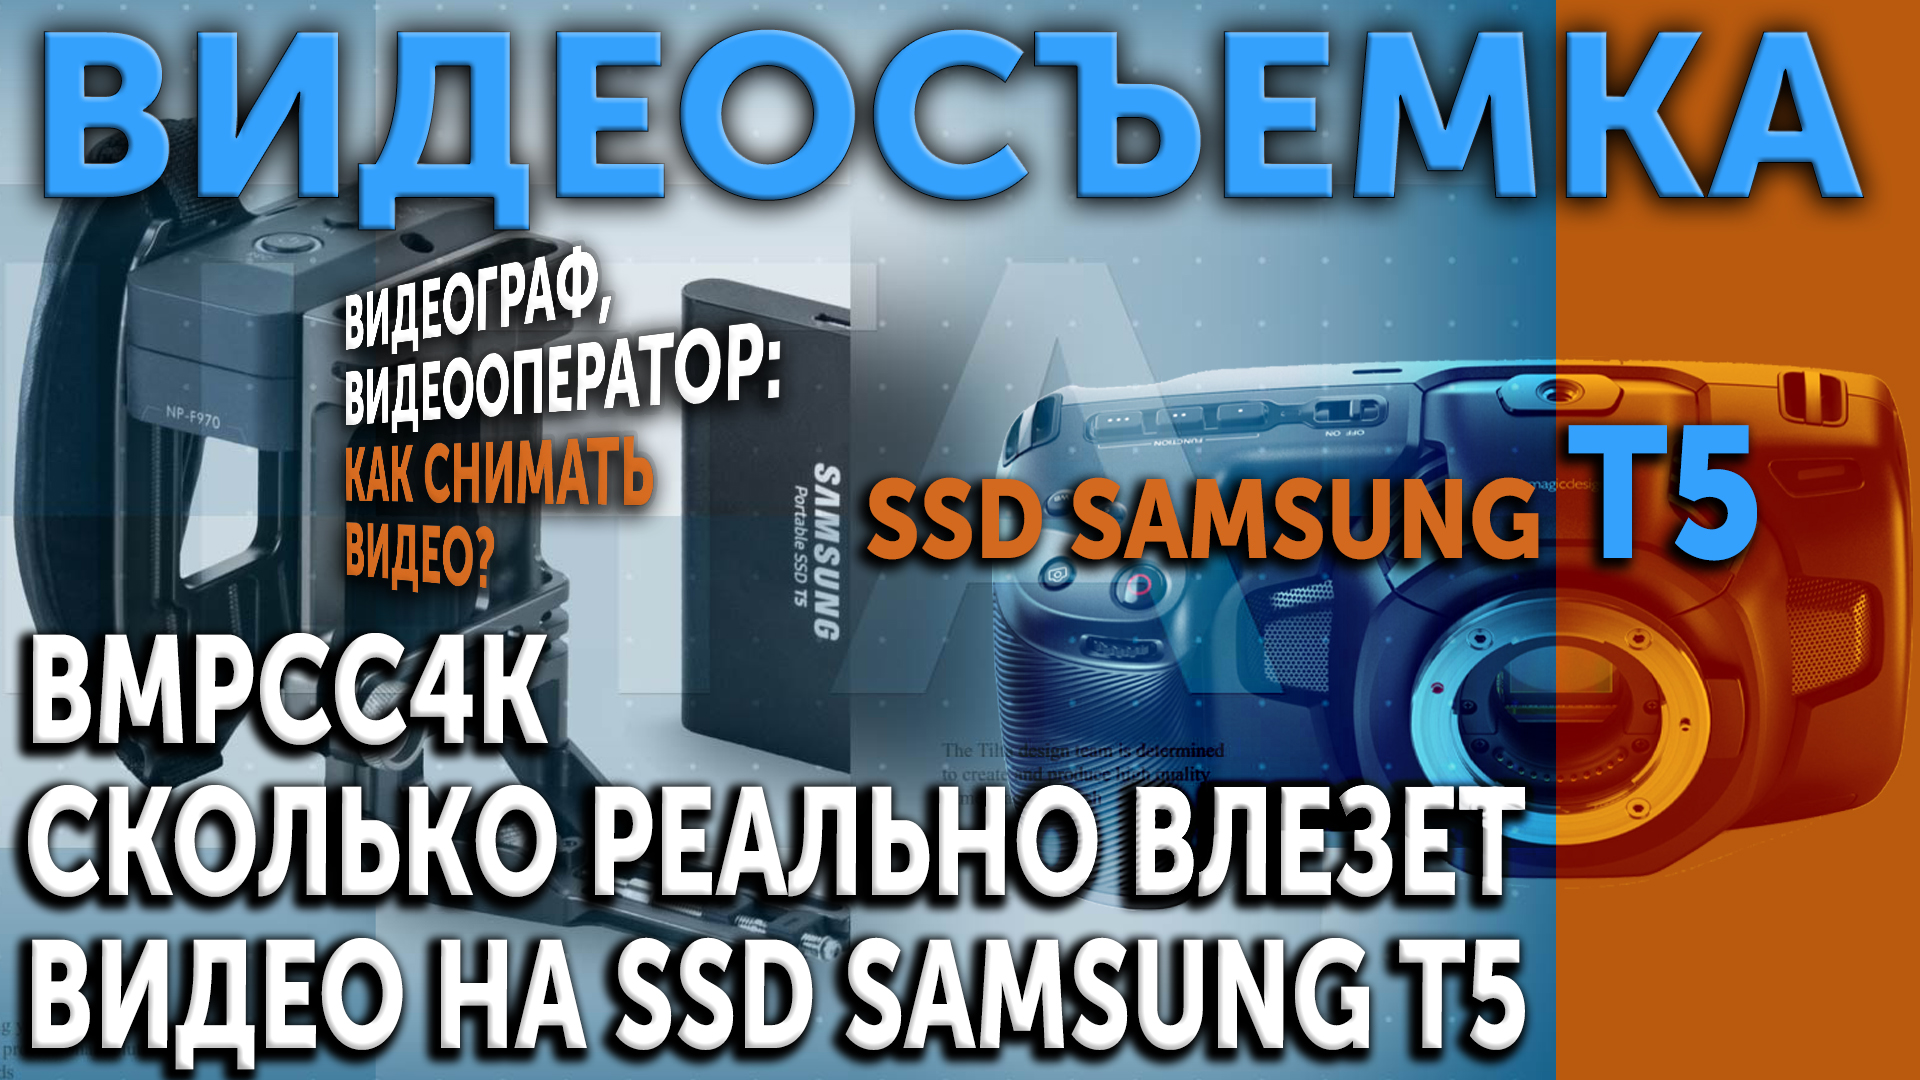 BMPCC4K. Сколько реально видео влезет на SSD SAMSUNG T5. Лучшие варианты носителей для записи видео.